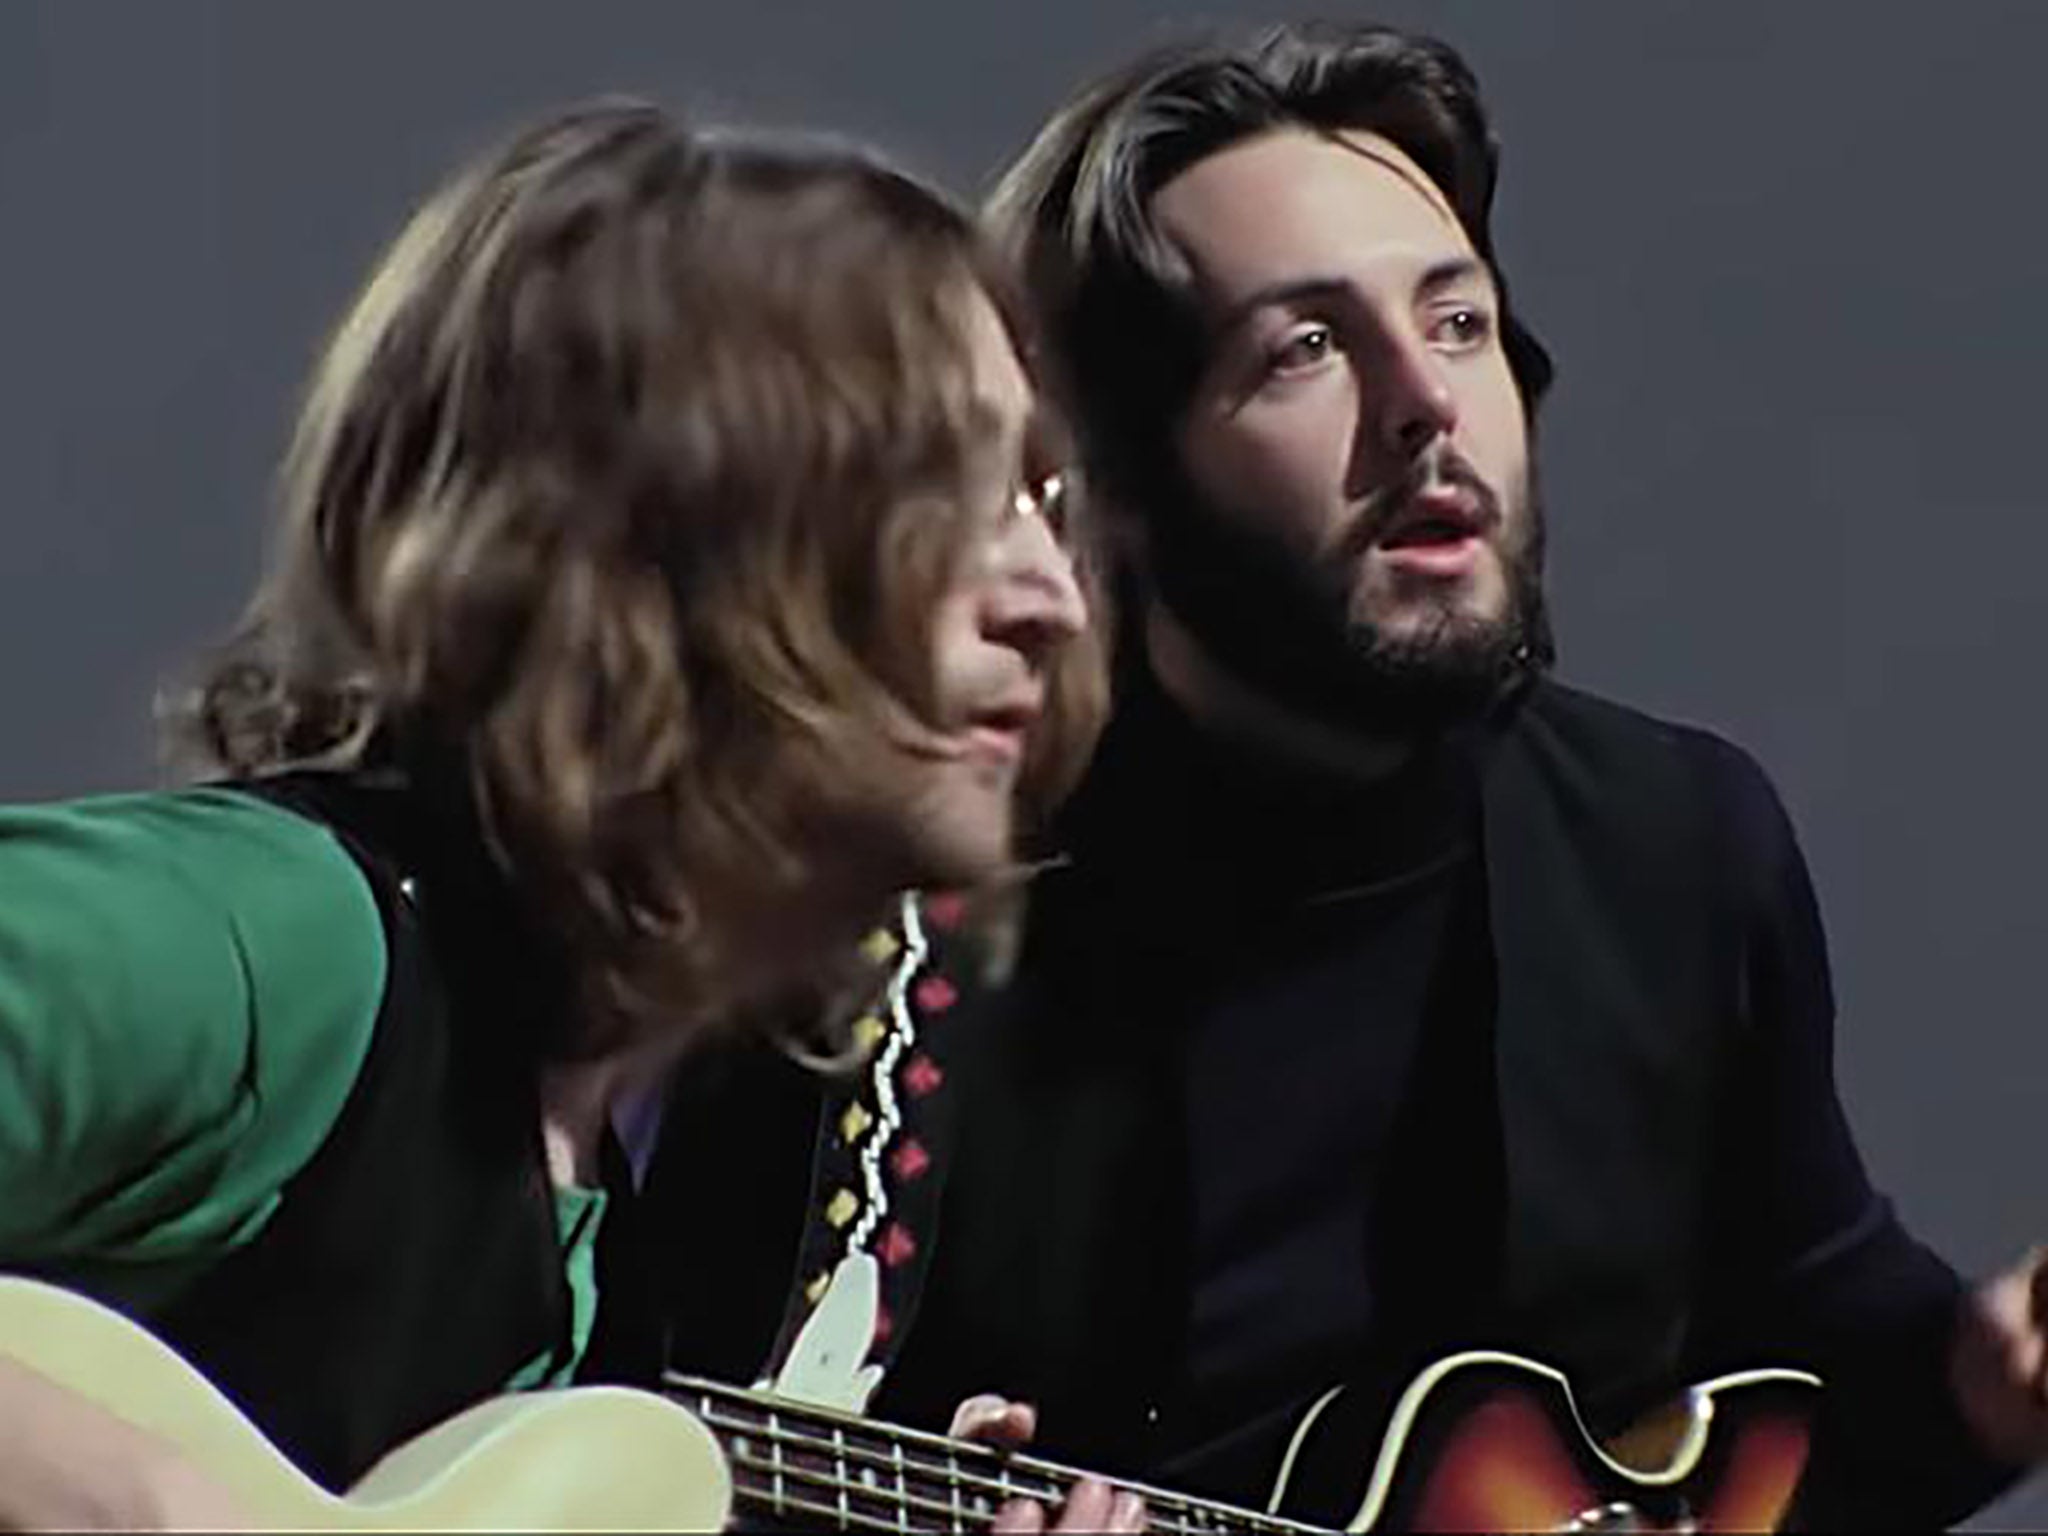 John Lennon and Paul McCartney in ‘The Beatles: Get Back’